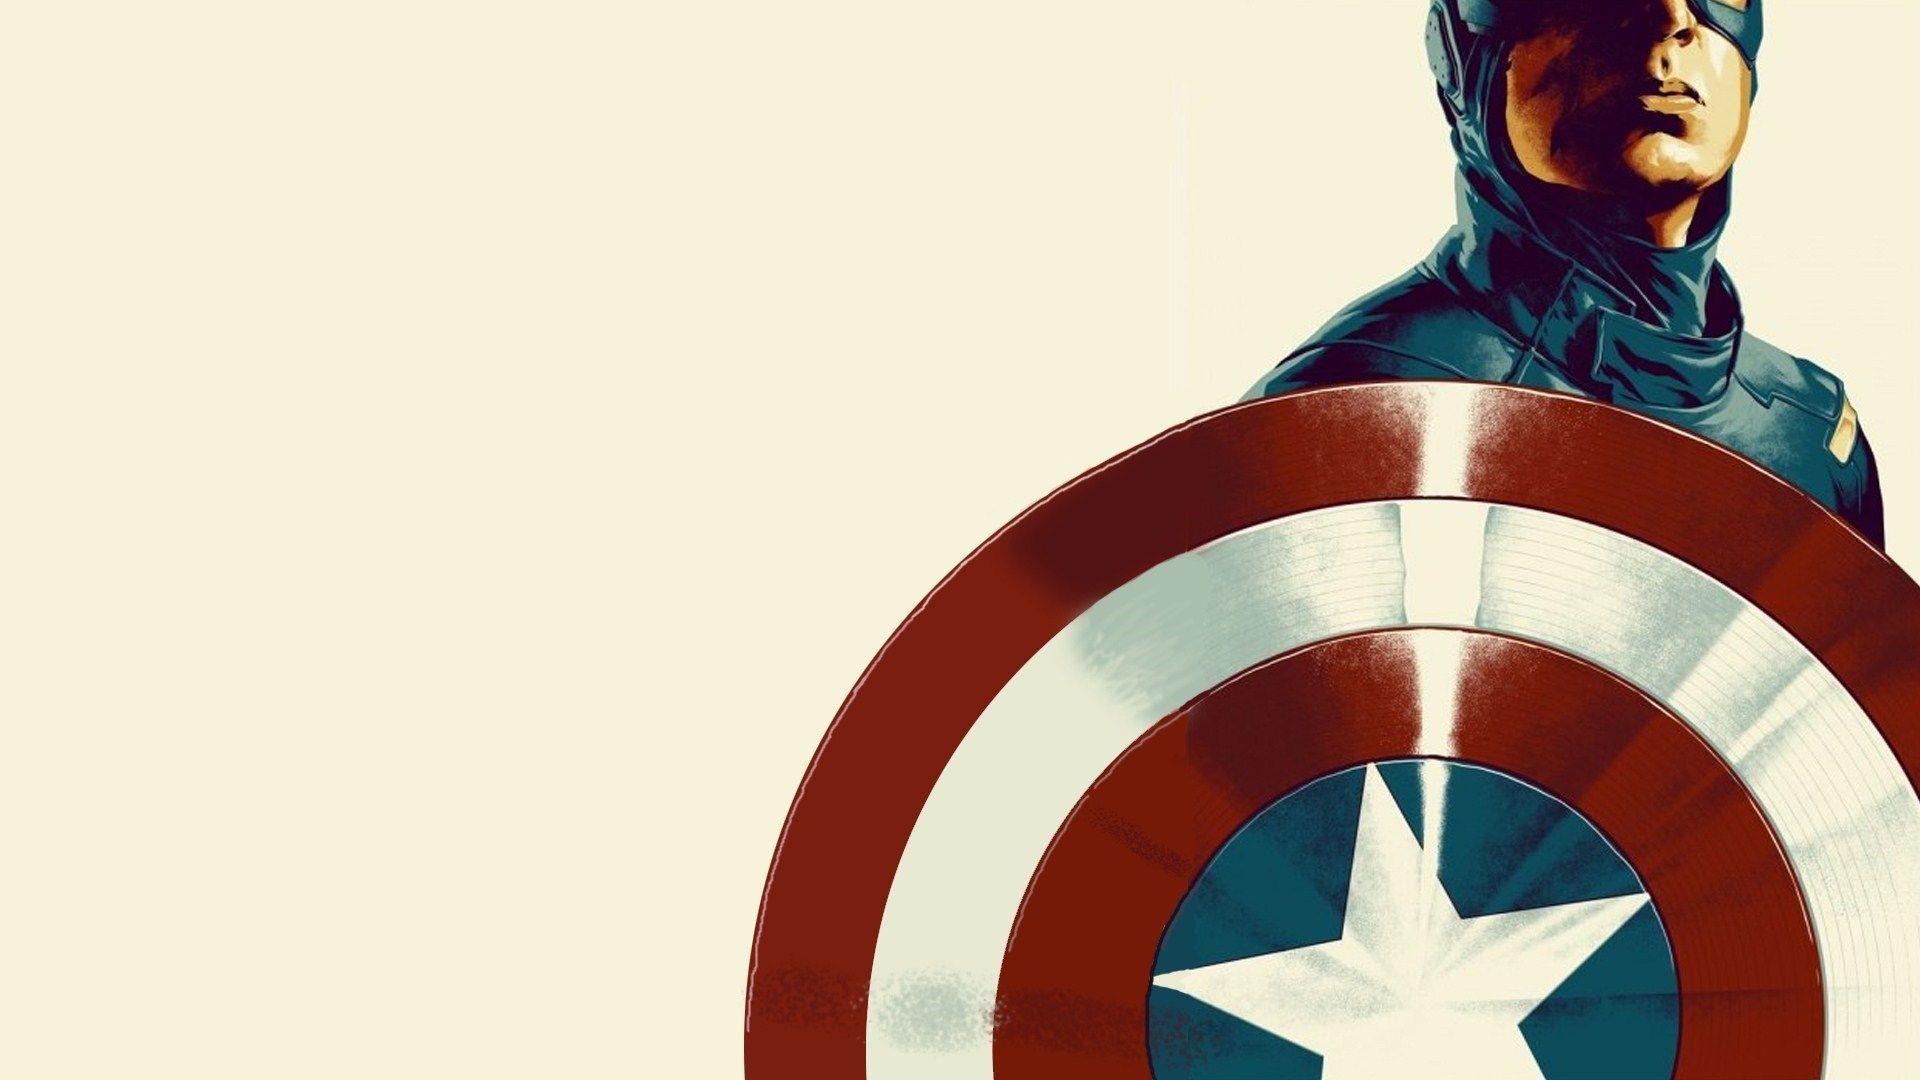 Captain America Shield Wallpaper HD